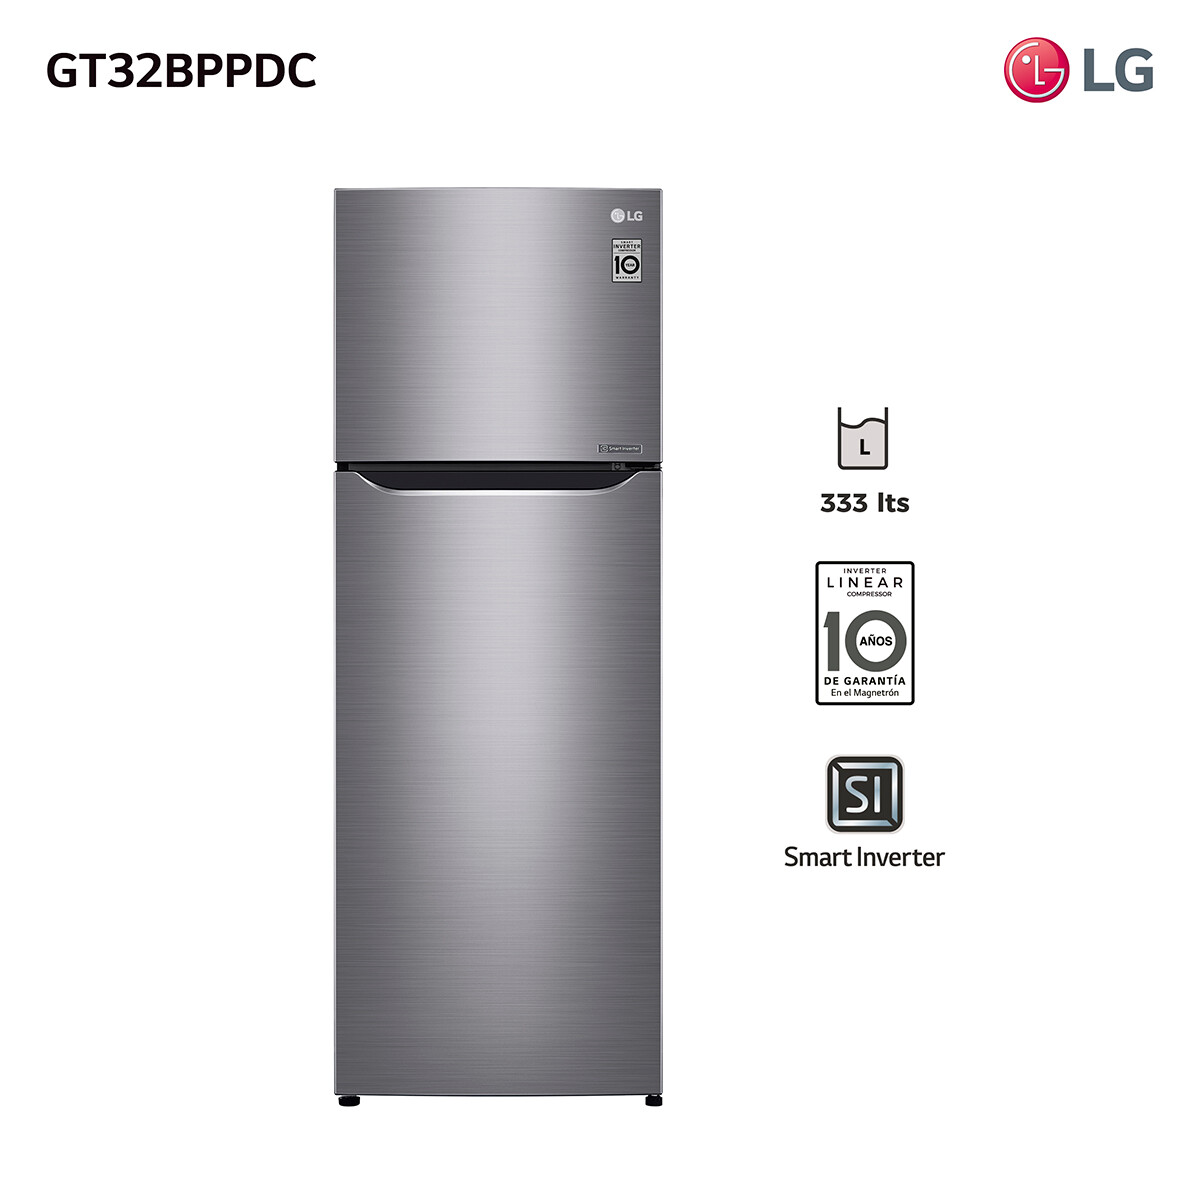 Refrigerador 312 Lts. Inverter Lg Gt32bppdc 